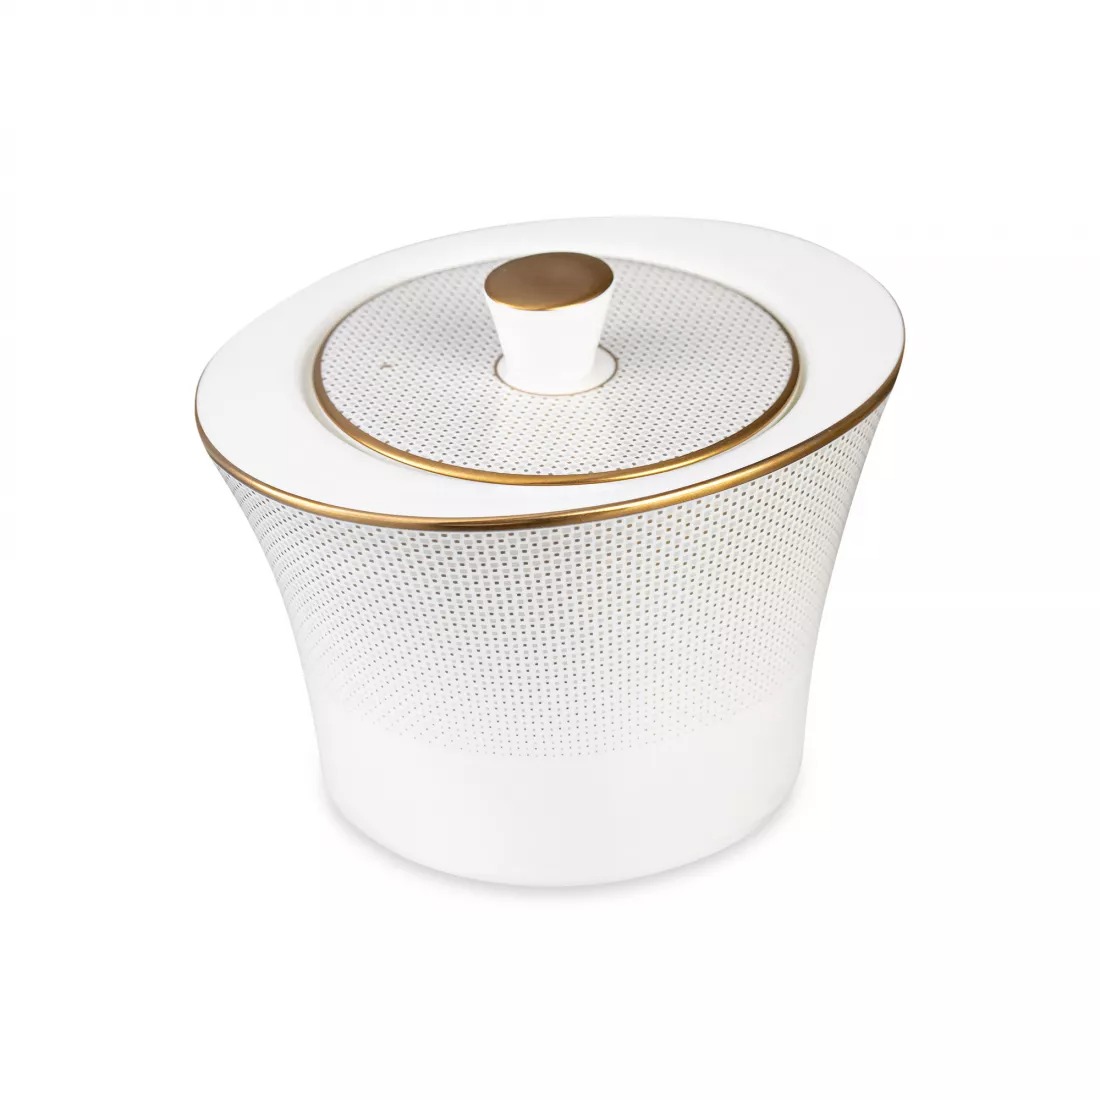 Сервиз чайный Narumi Золотая паутина на 6 персон 21 предмет, фарфор костяной, цвет белый - фото 8